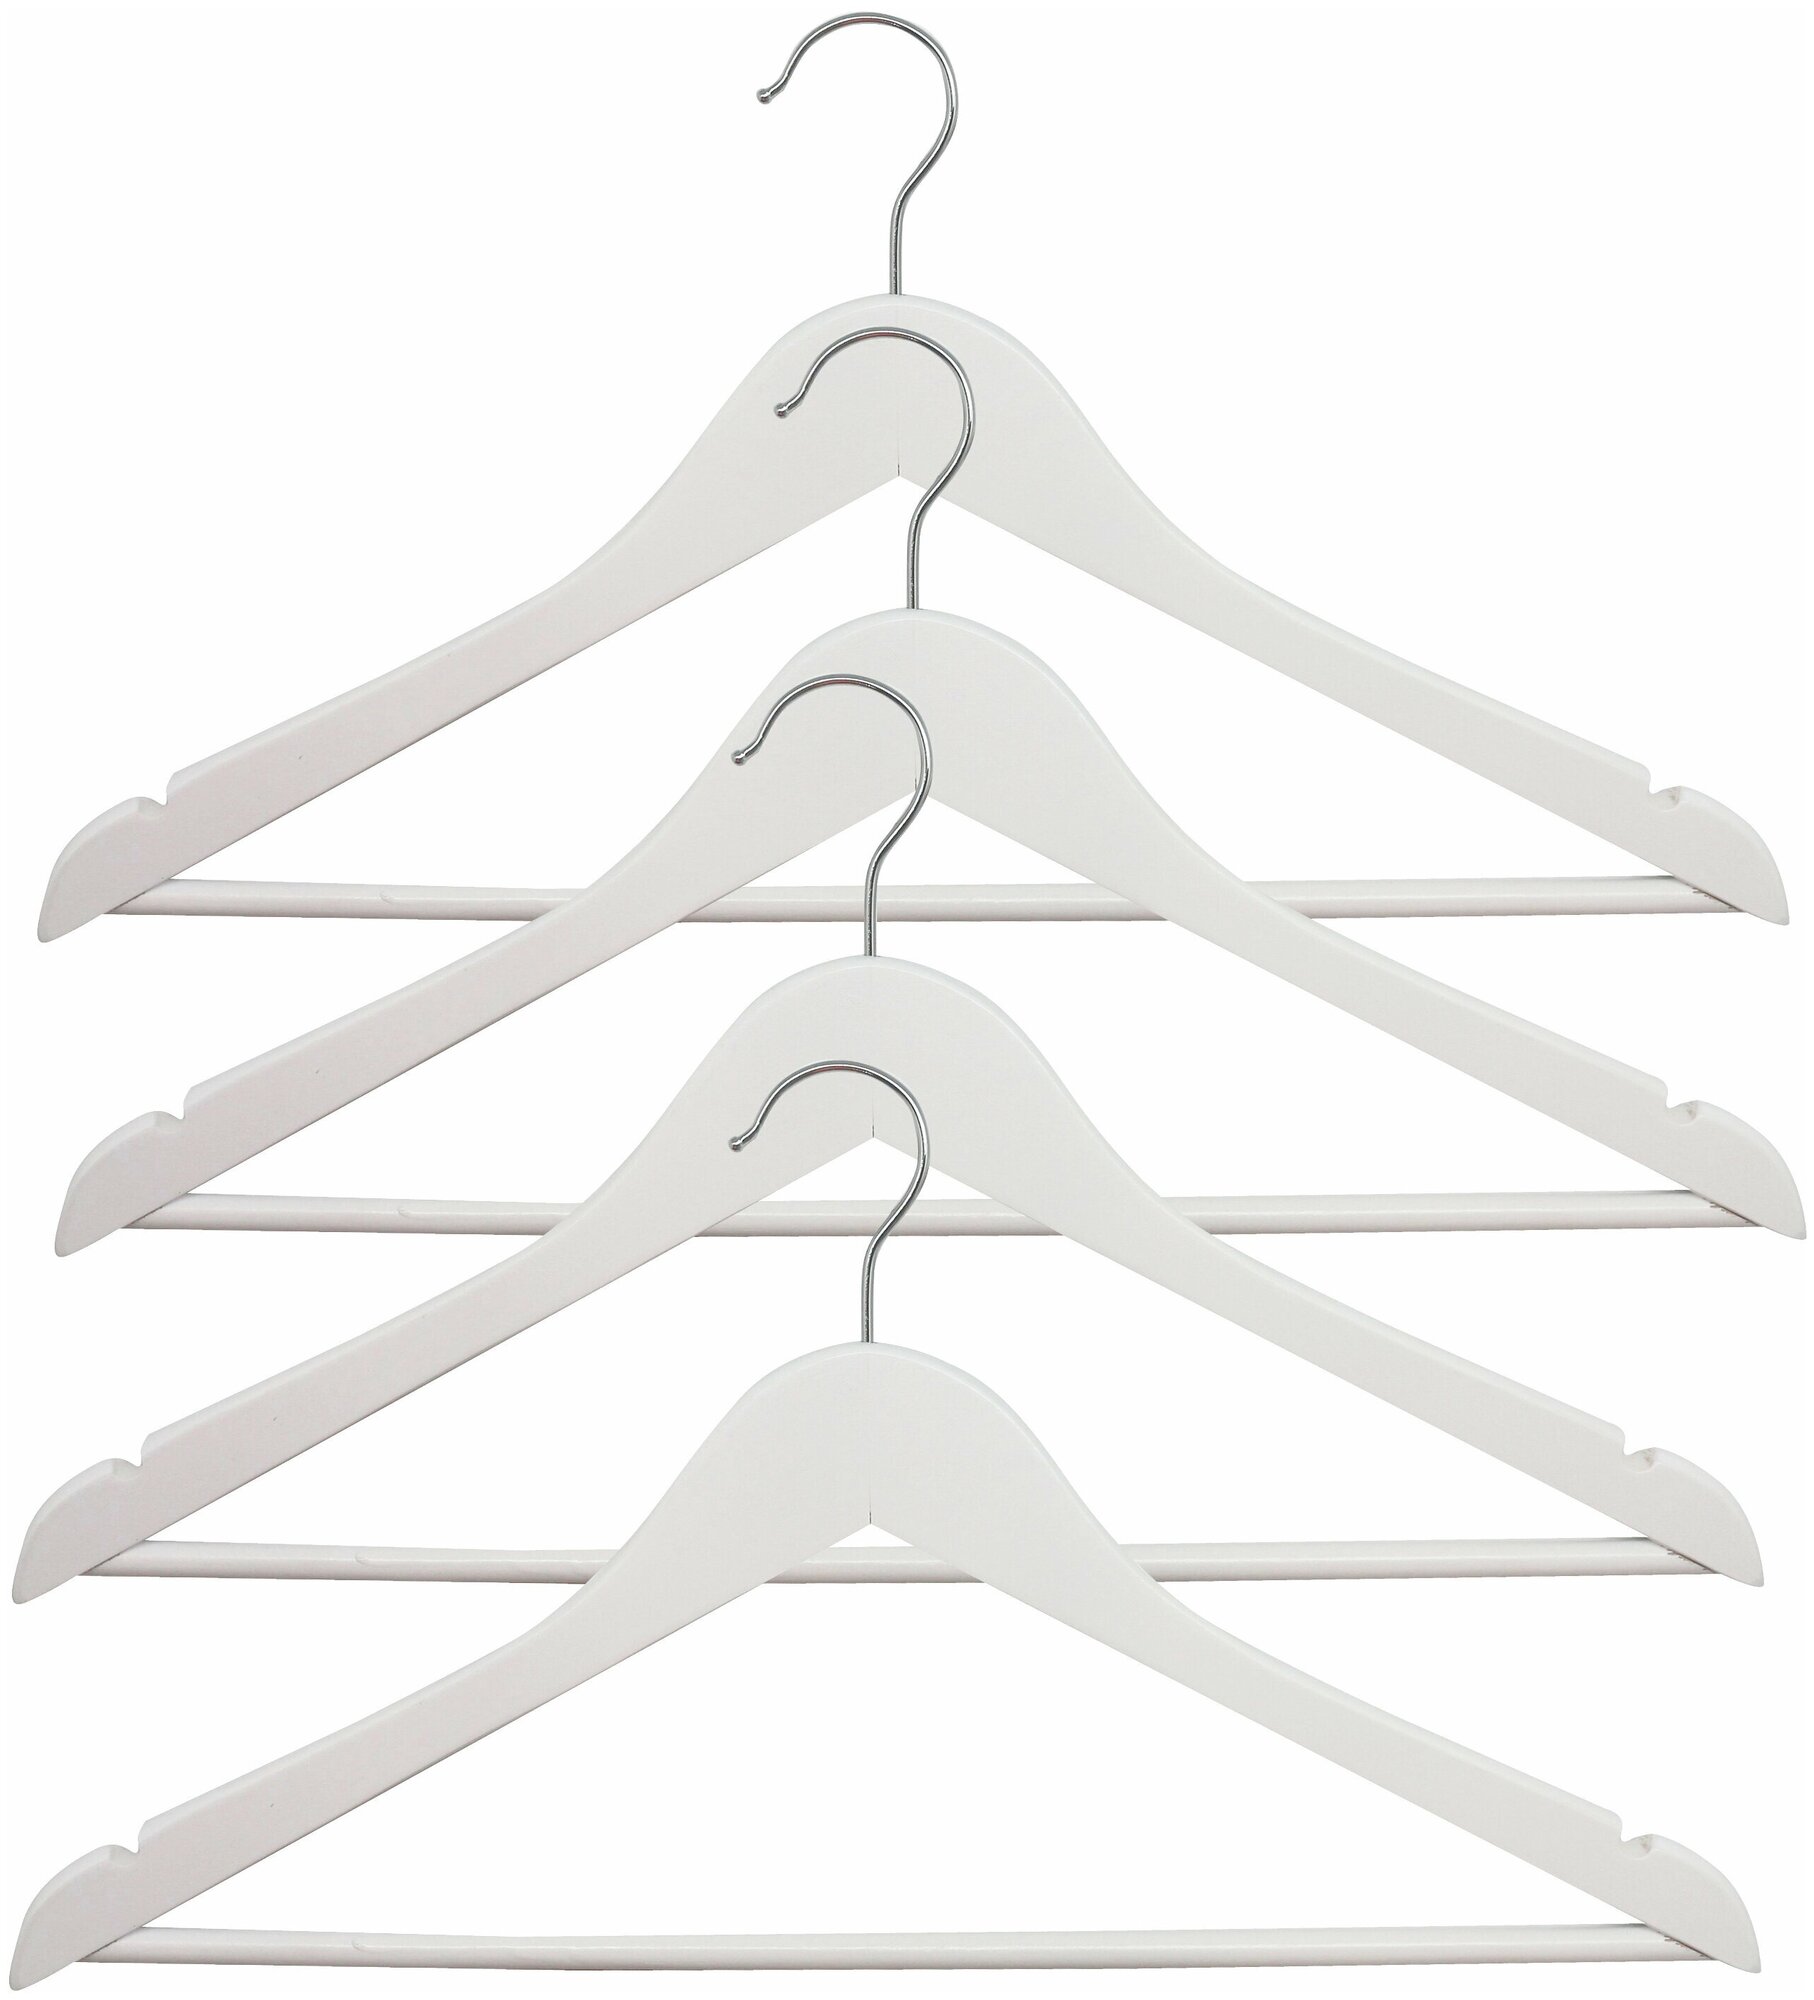 Набор деревянных вешалок для одежды 445x230x12 мм, 4 шт, цвет белый. Закругленные края изделия защищают одежду от деформации и растягивании в плечах.